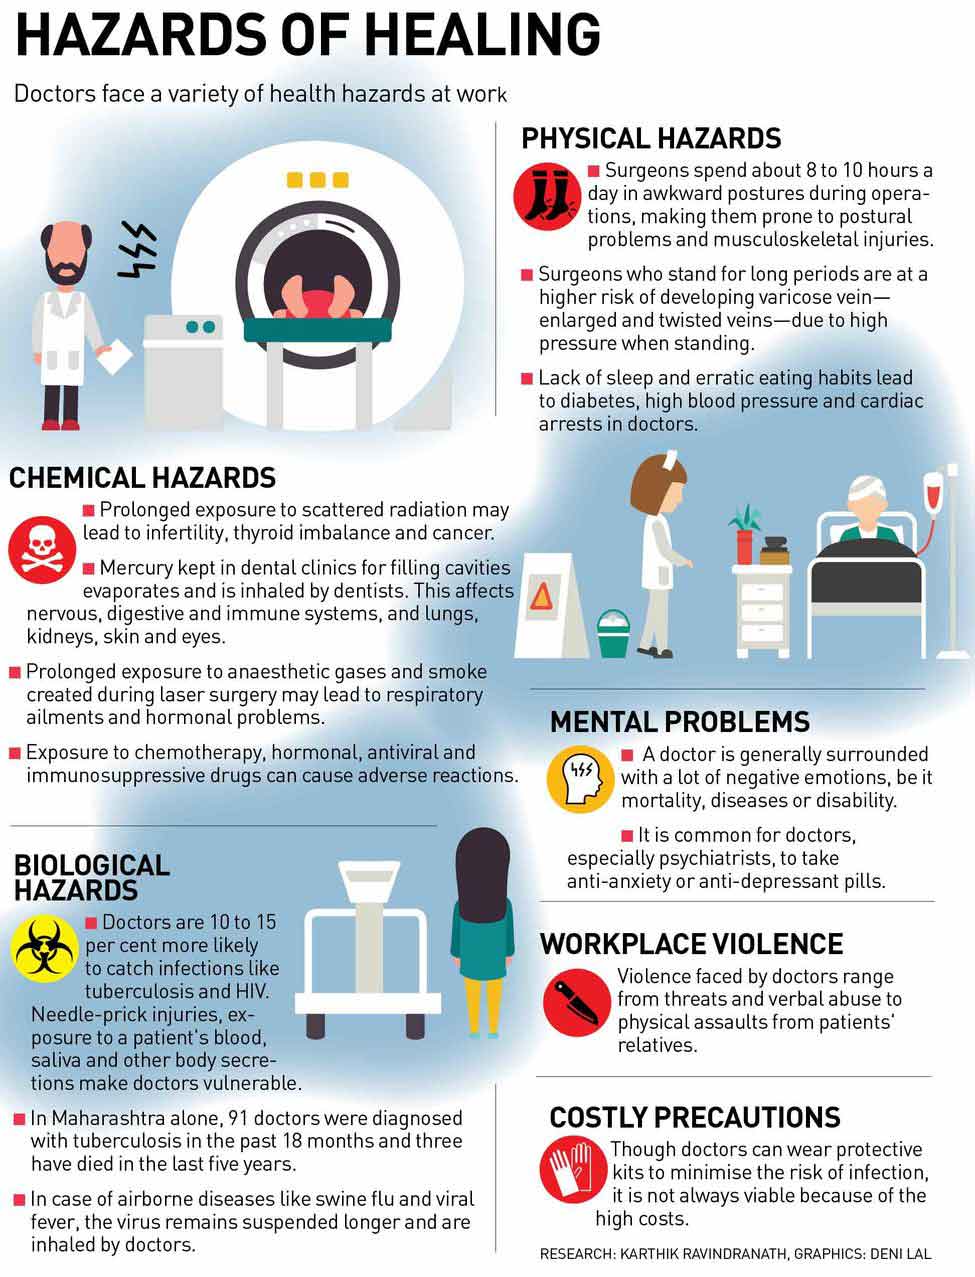 26-Hazards-of-healing